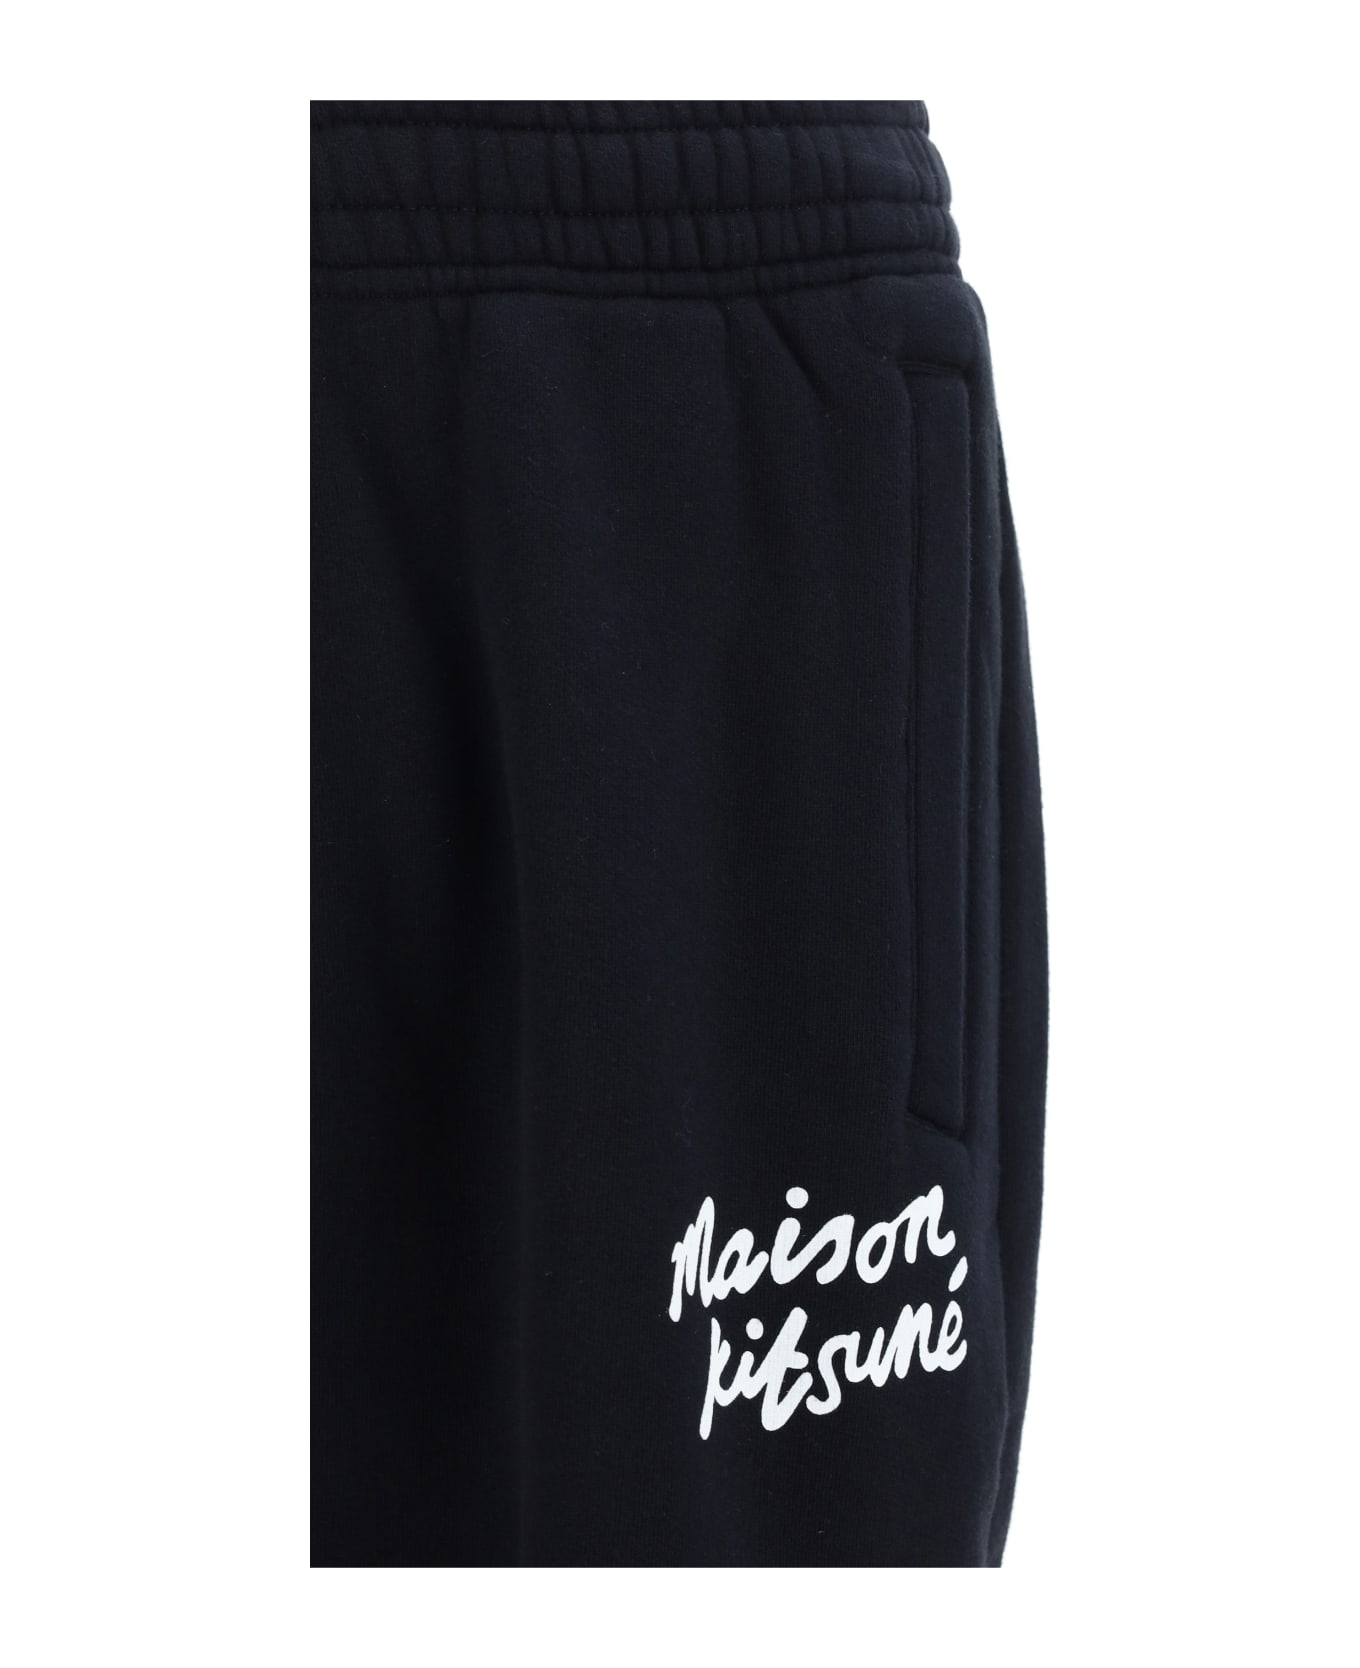 Maison Kitsuné Sweatpants - Black/white スウェットパンツ